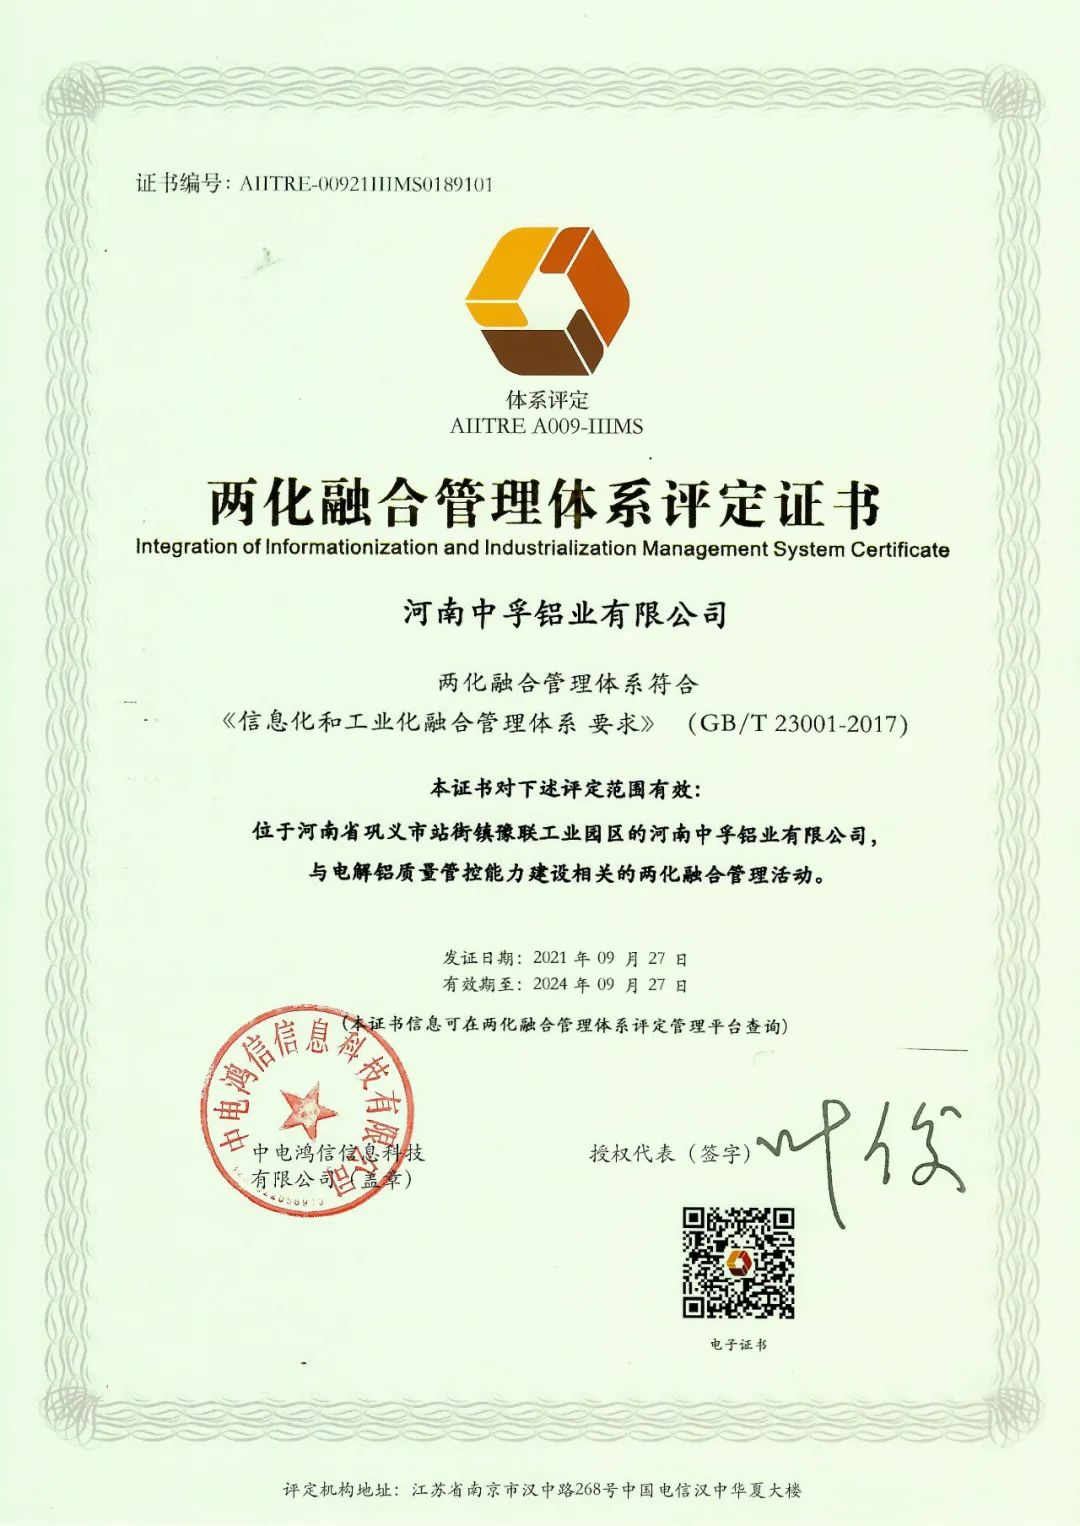 中孚鋁業公司獲得兩化融合管理體系認證證書